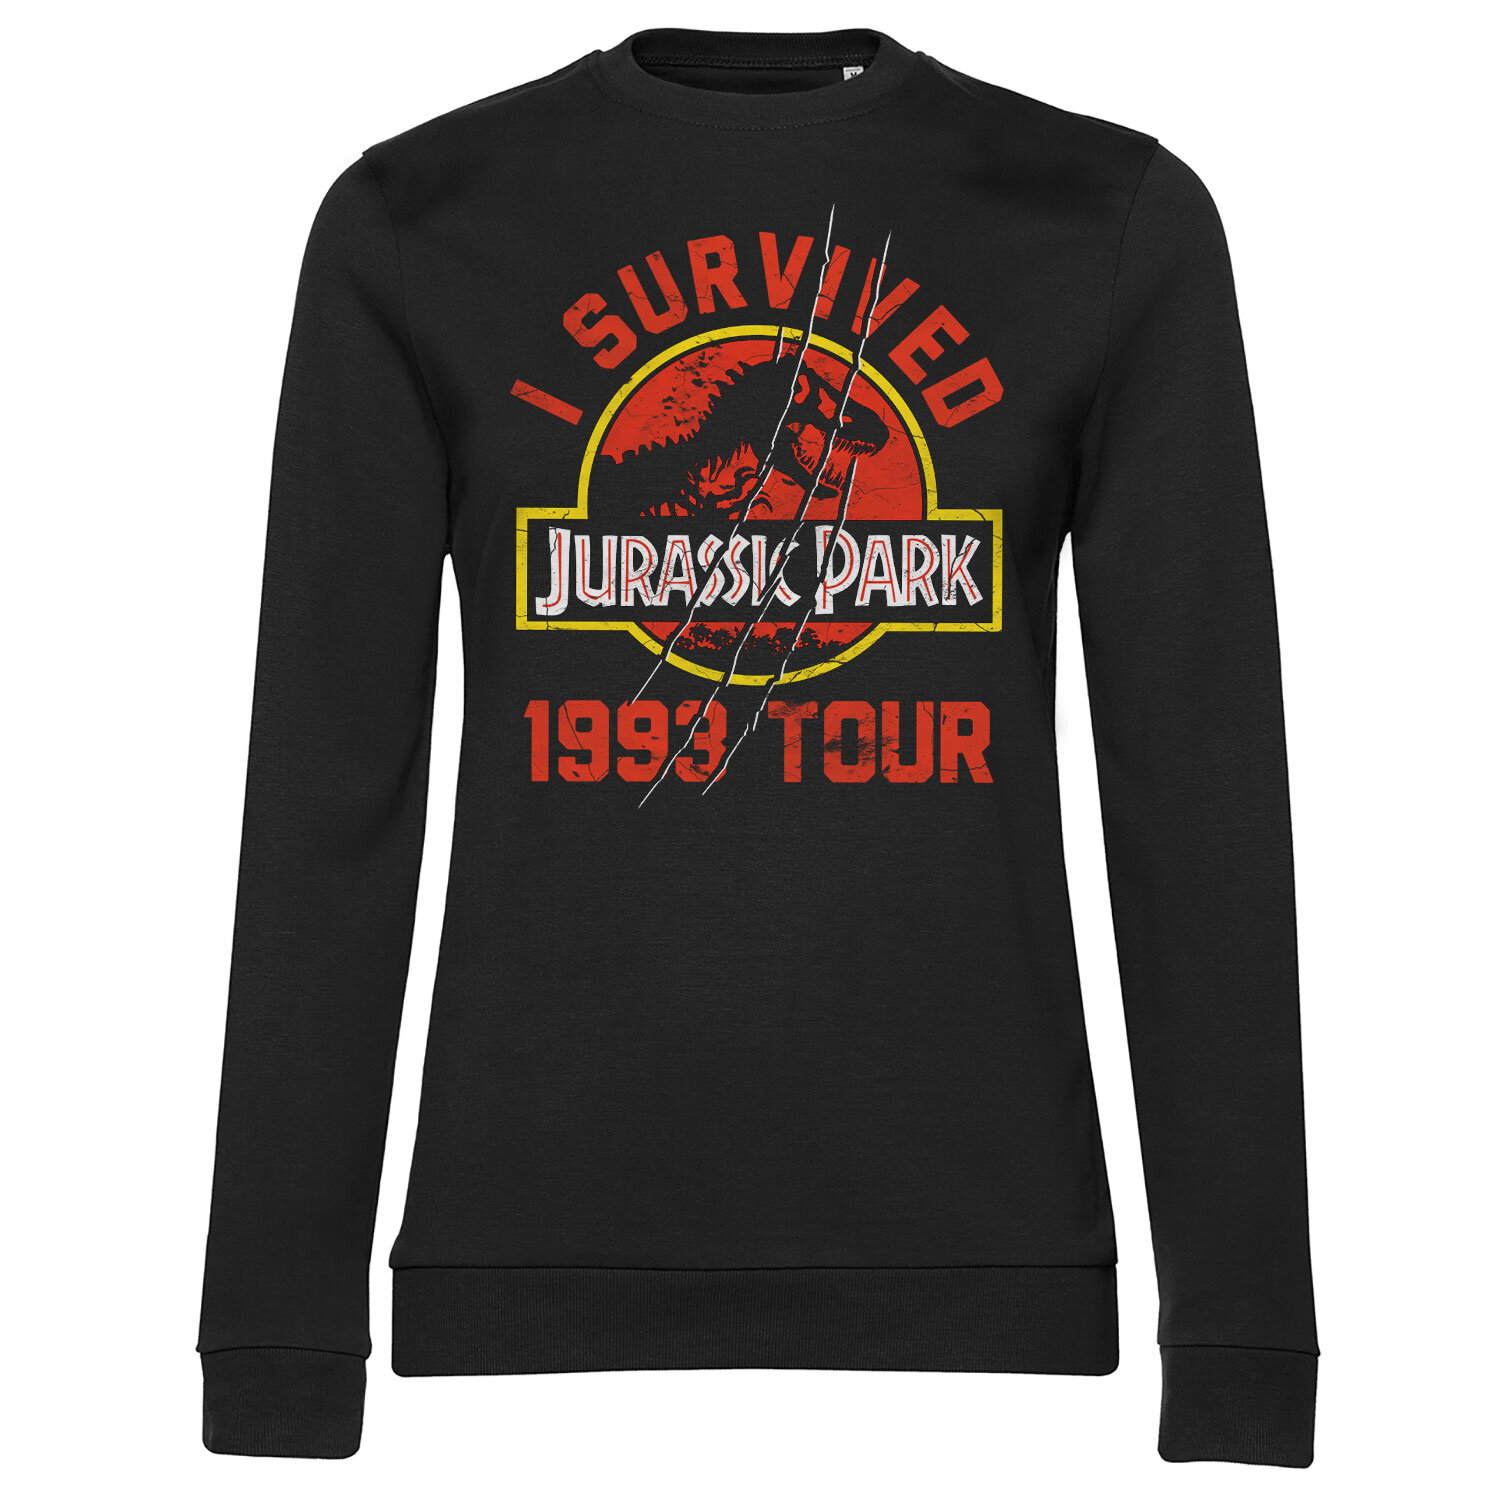 Jurassic Park 1993 Tour Girly Sweatshirt